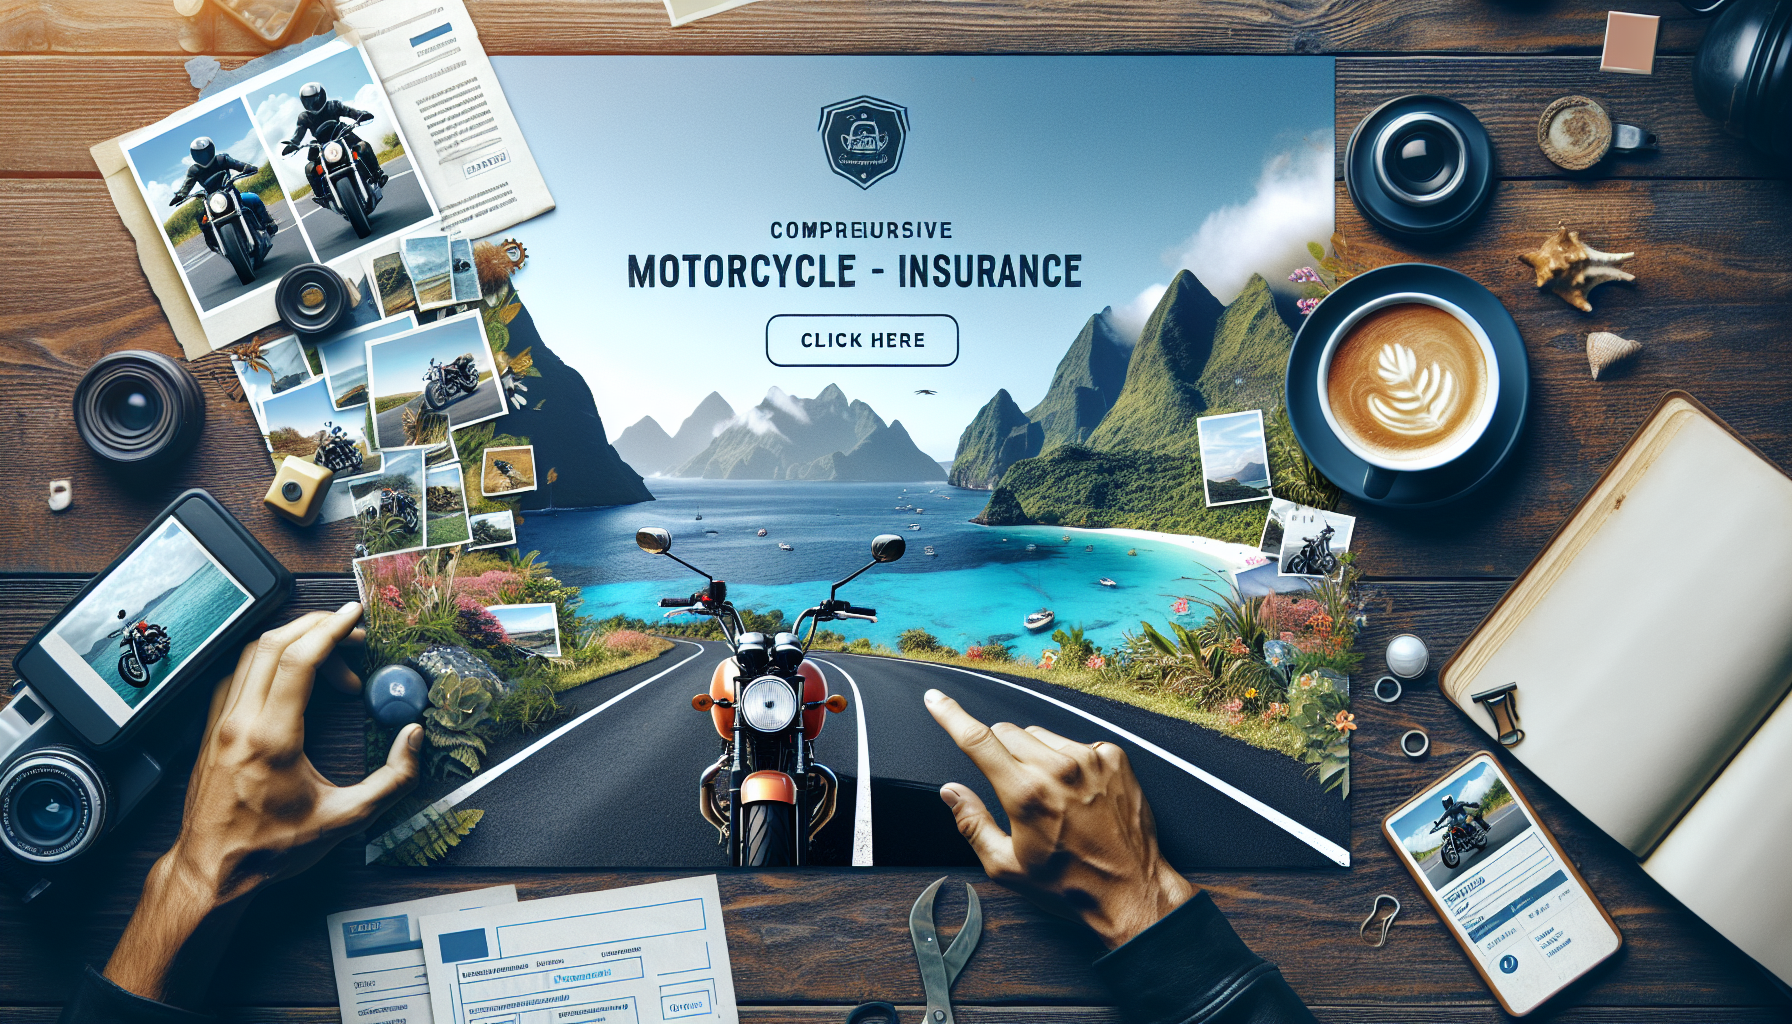 obtenez facilement un devis d'assurance moto à la réunion avec nos conseils d'experts en assurance moto à la réunion.